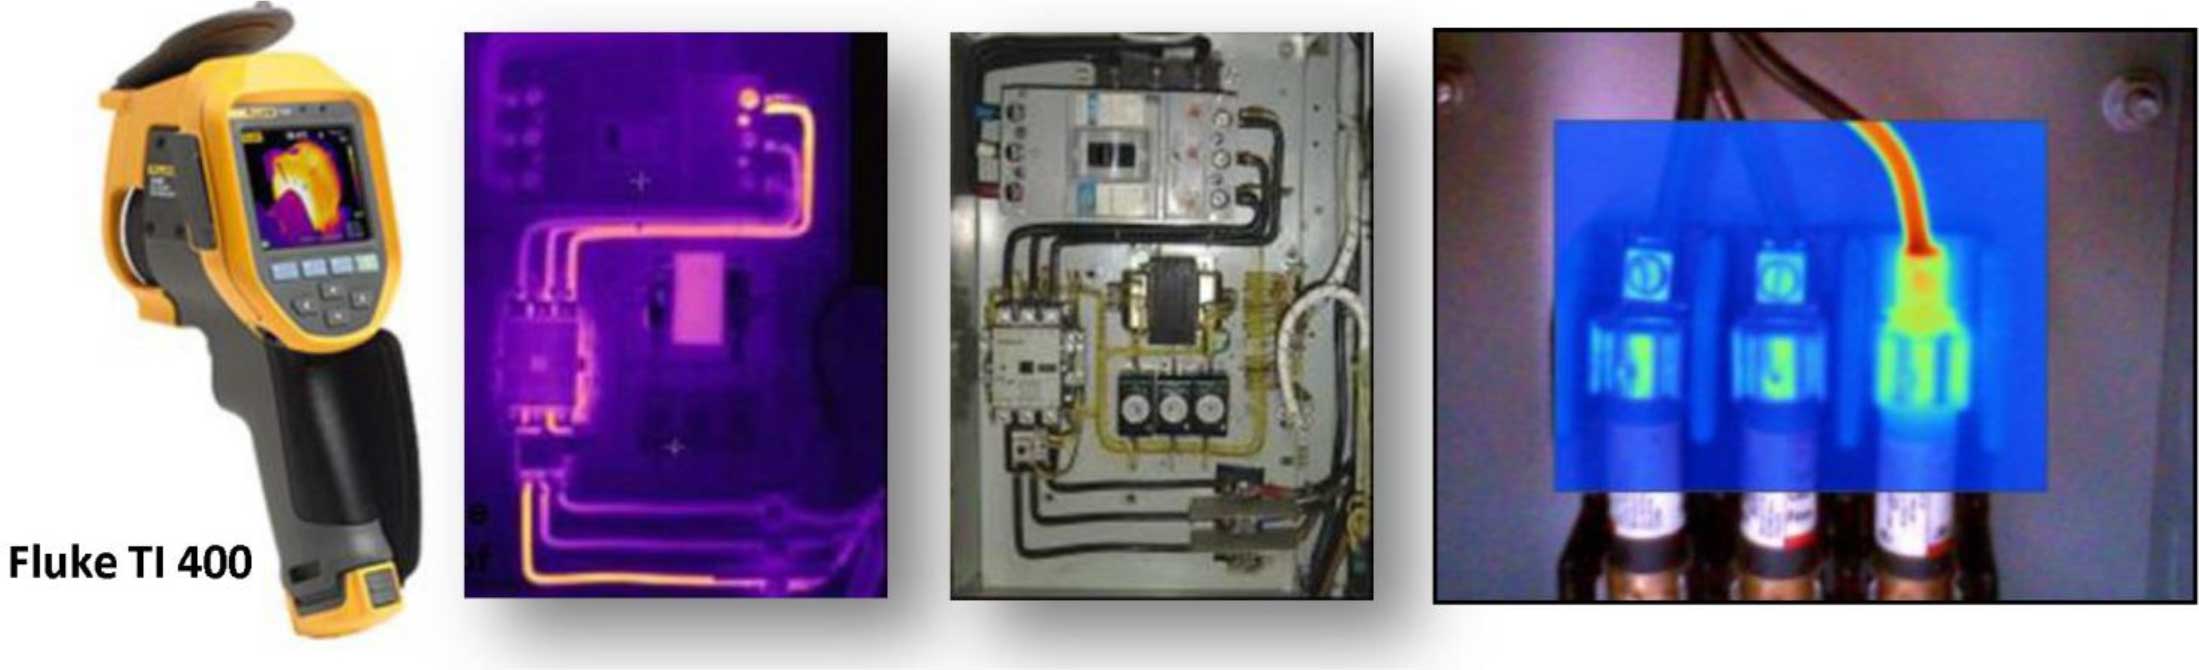 Чтобы сделать обнаружение потерь электрической энергии более эффективным, можно также использовать передовые ИК-технологии обнаружения «ГОРЯЧИХ ПЯТЕН» для надежного сокращения электрических потерь с использованием Fluke Ti 400 (заменен на Fluke Ti401 PRO)  – тепловизора с фокусировкой Laser-Sharp